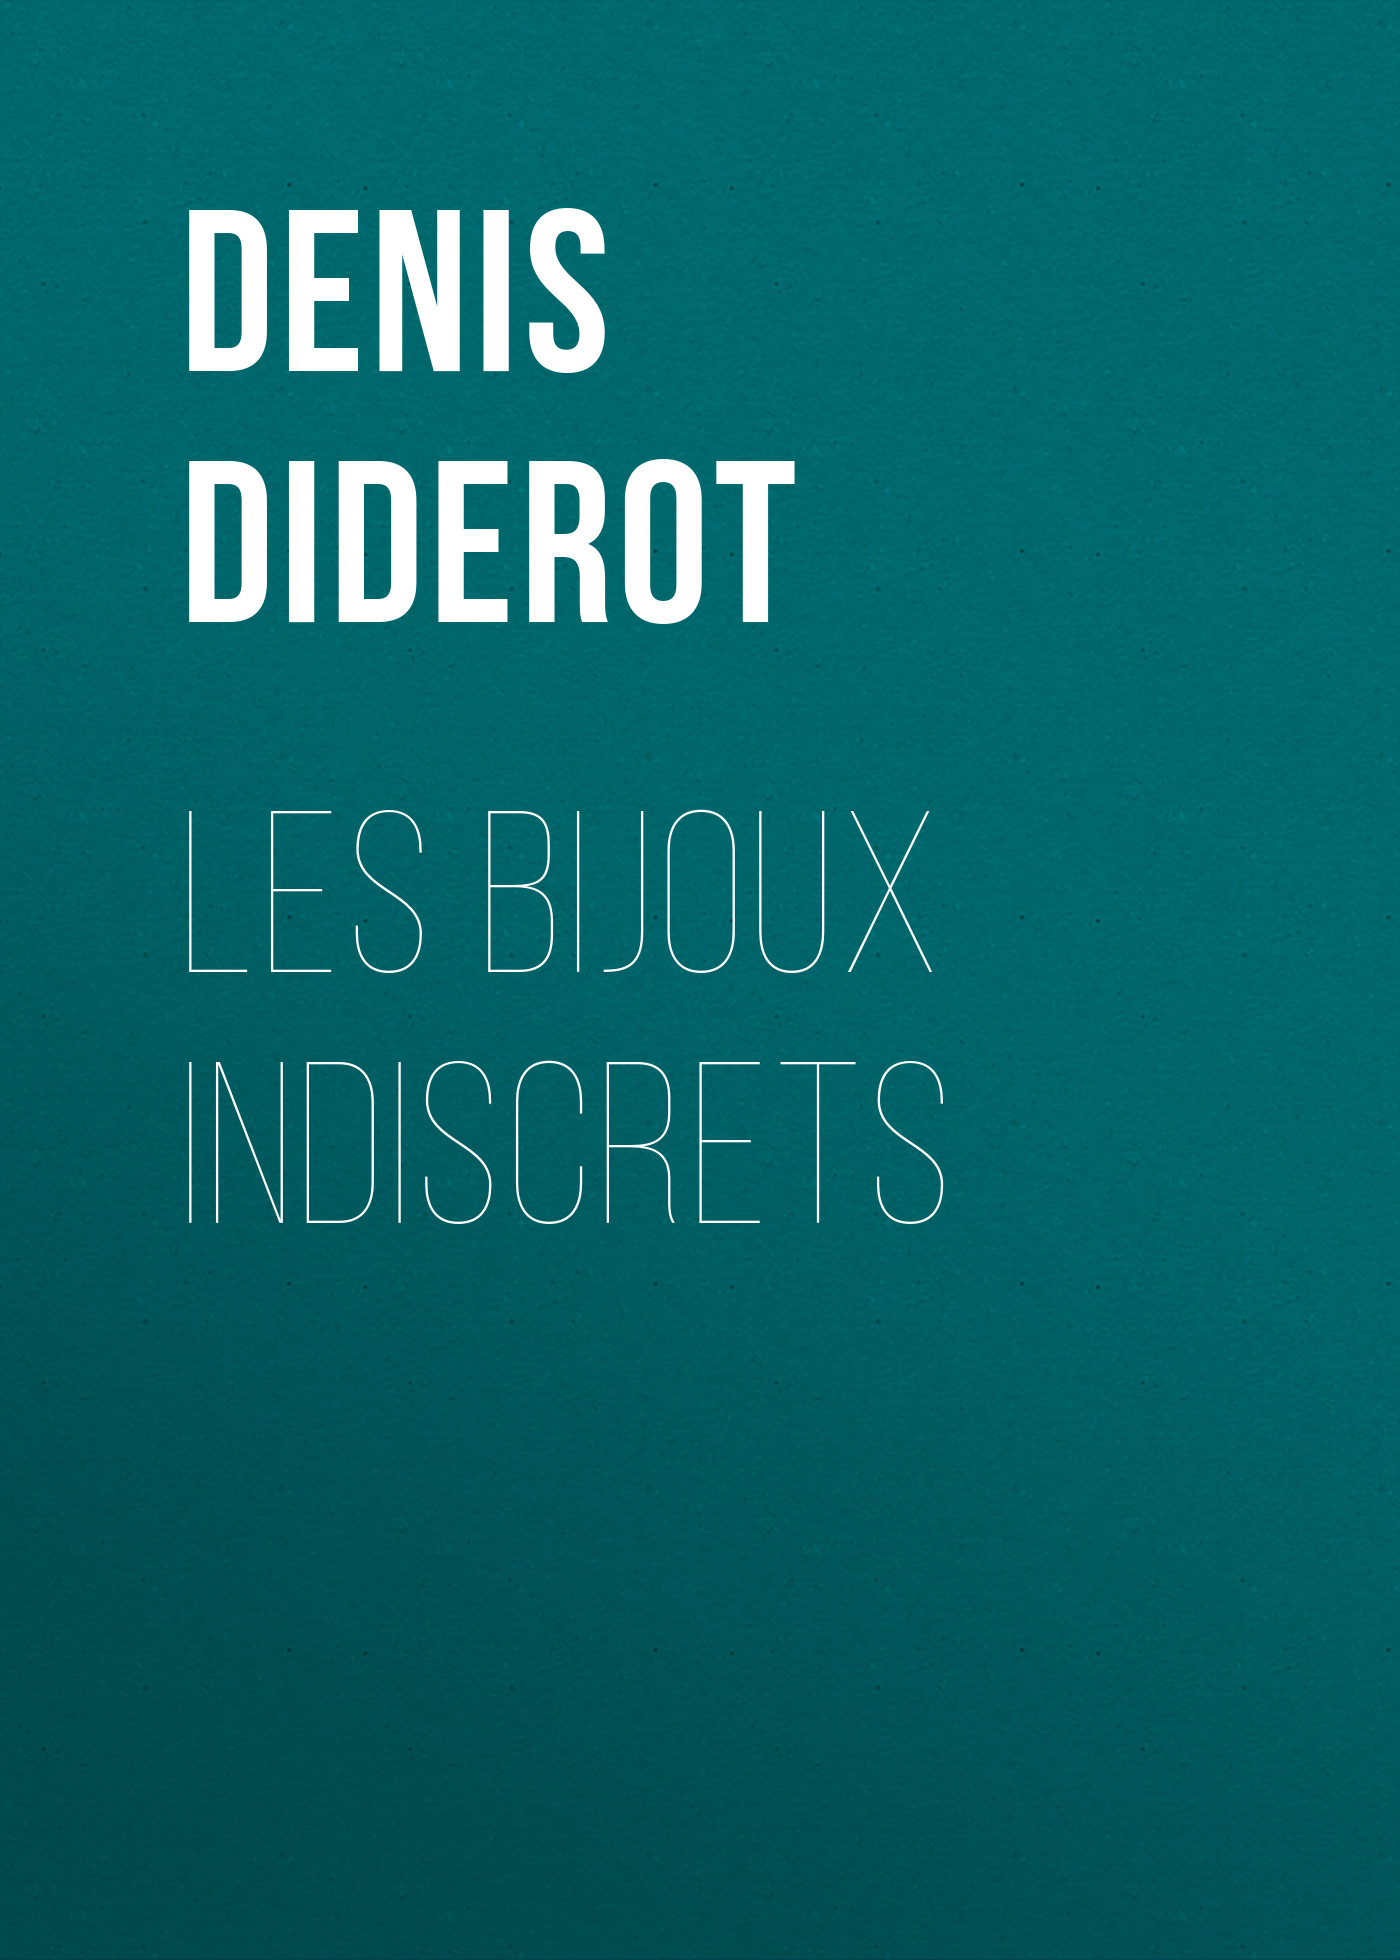 Книга Les bijoux indiscrets из серии , созданная Denis Diderot, может относится к жанру Эротическая литература, Зарубежная старинная литература, Зарубежная классика. Стоимость электронной книги Les bijoux indiscrets с идентификатором 24547924 составляет 0 руб.